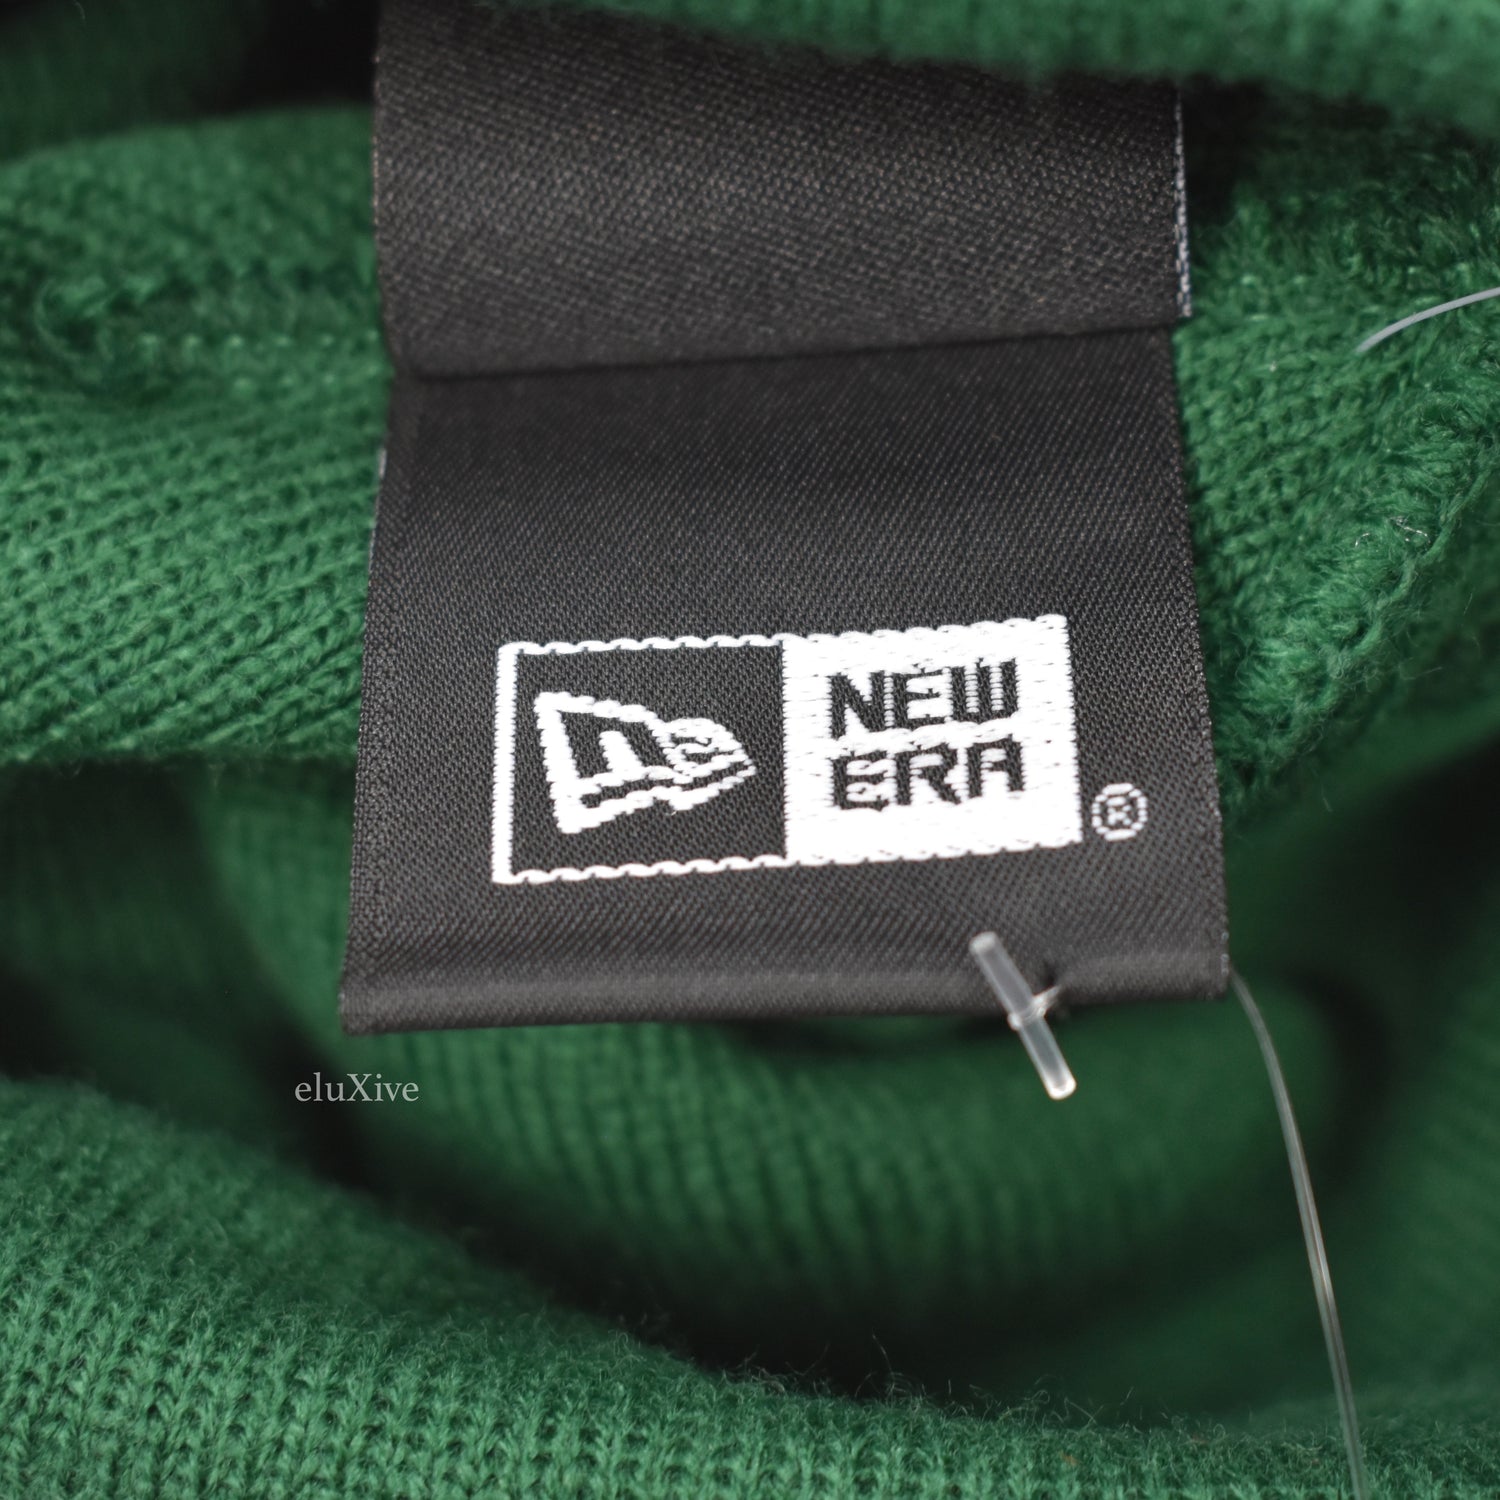 Supreme x New Era Box Logo Beanie - Green